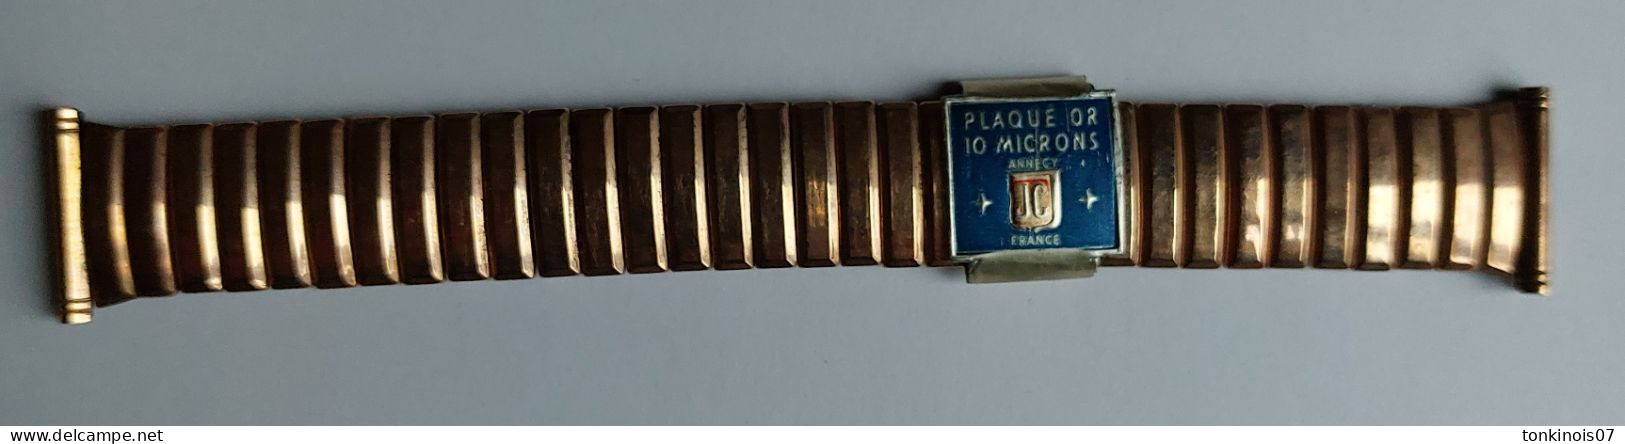 Bracelet De Montre Années 1930/1950 En Métal Plaqué Or 10 Microns Annecy JC France - Relojes Ancianos